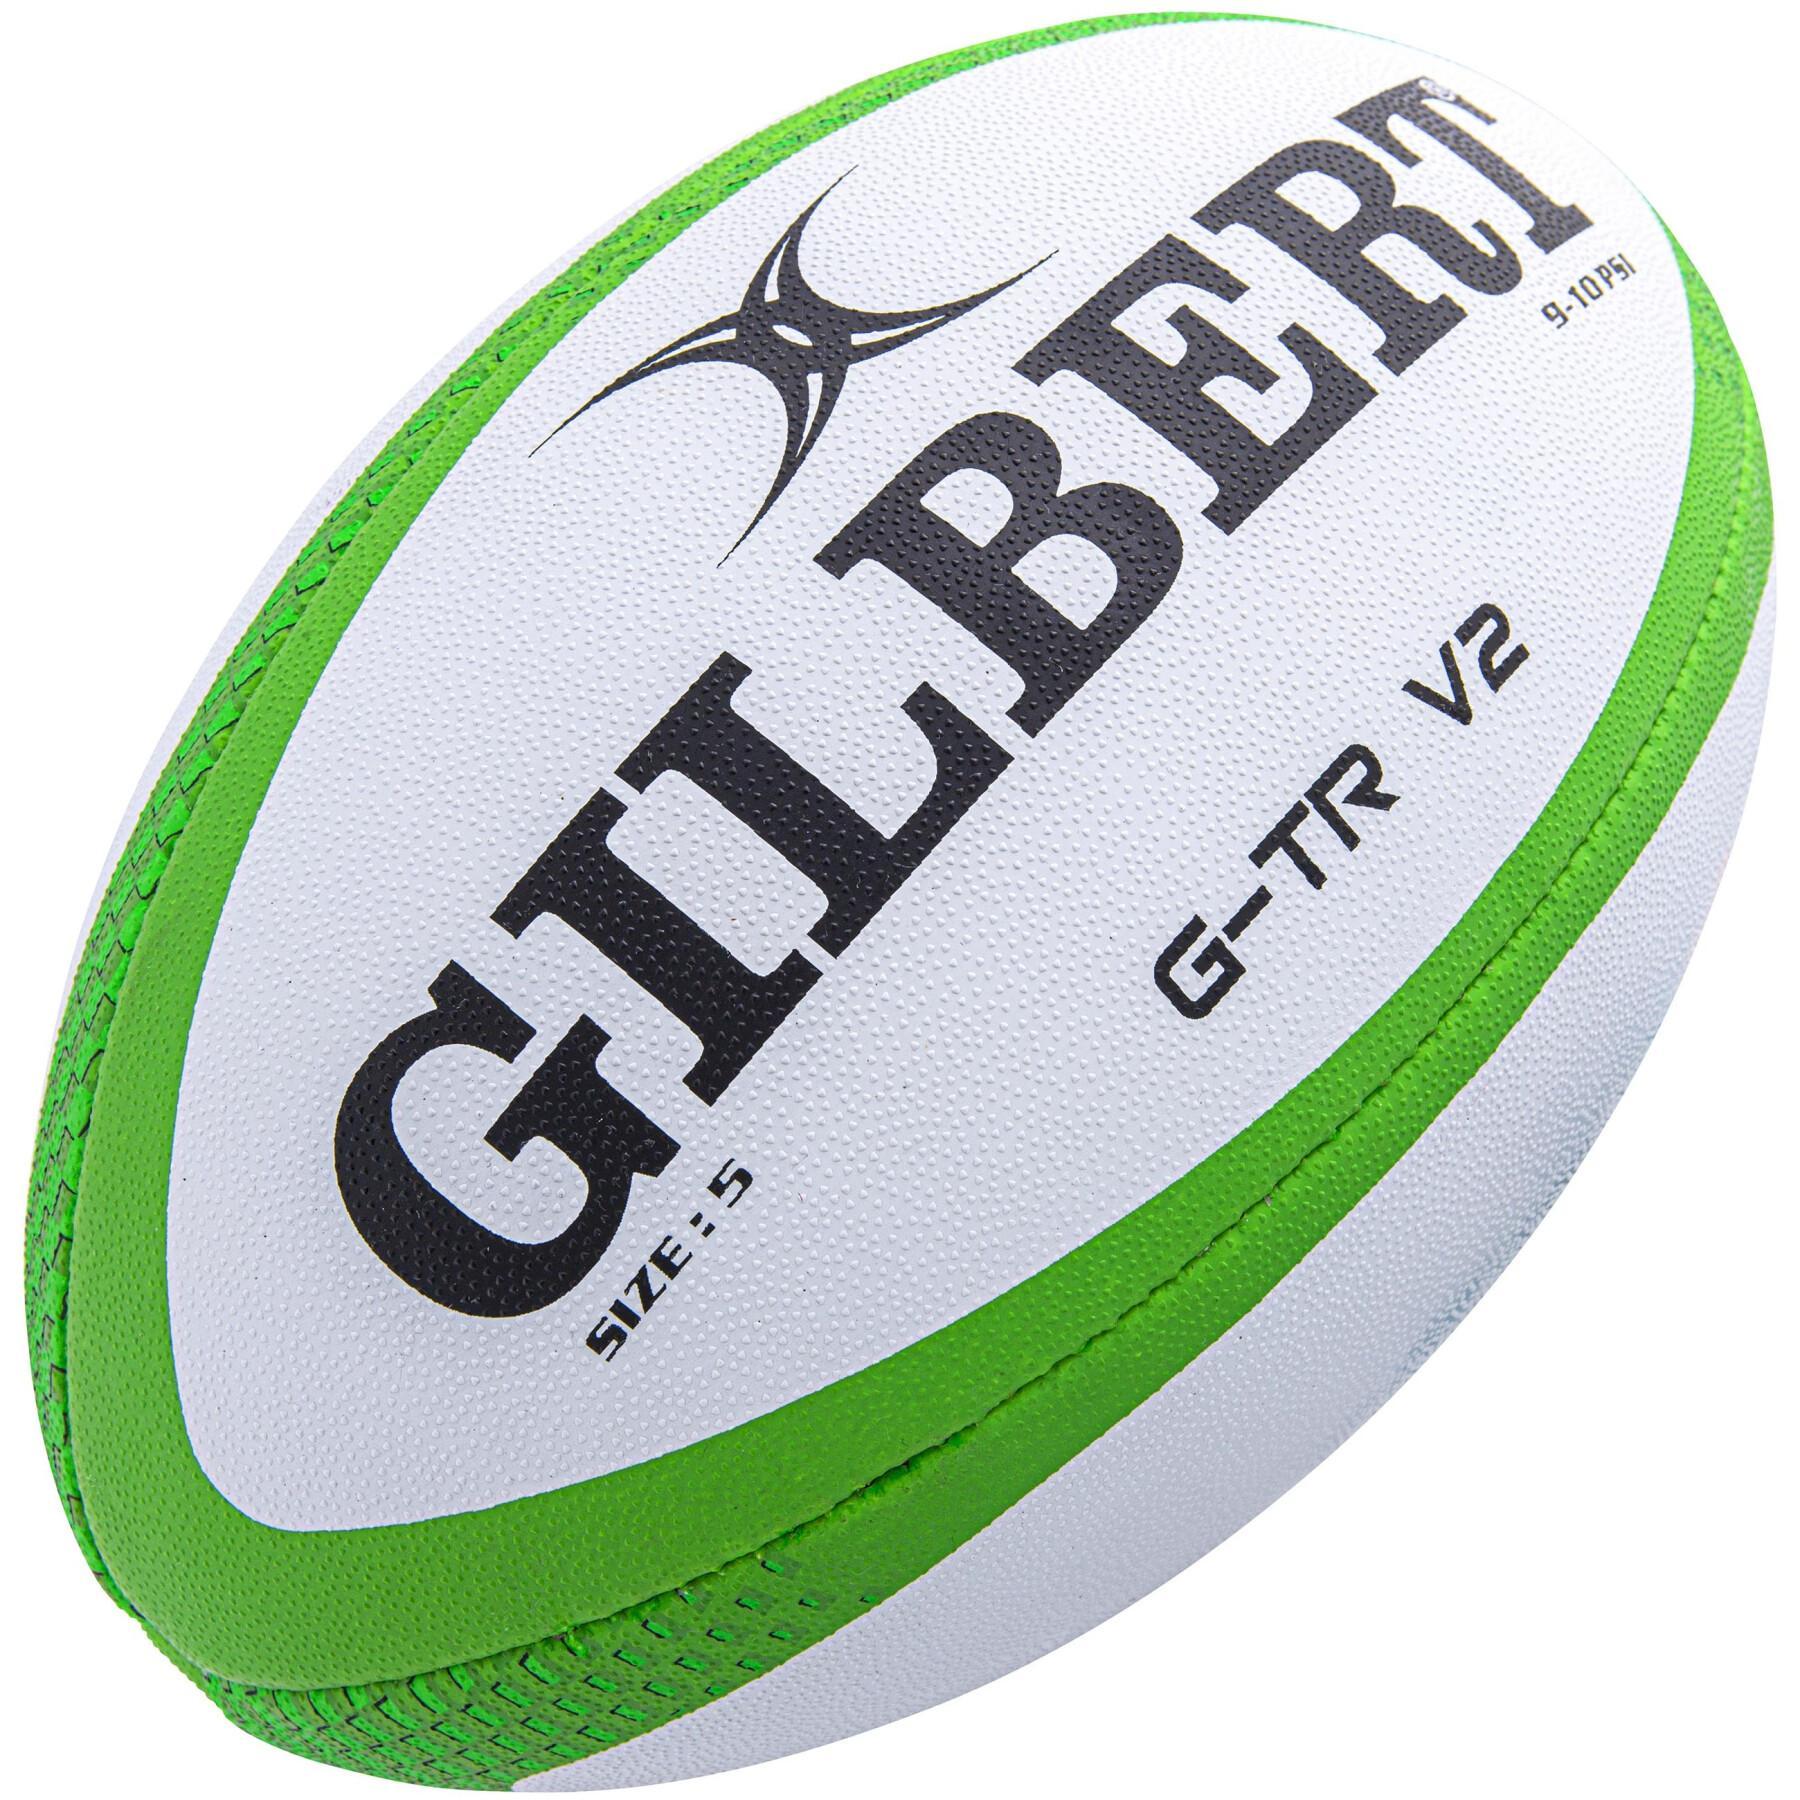 Rugbyball Gilbert GTR-V2 7S